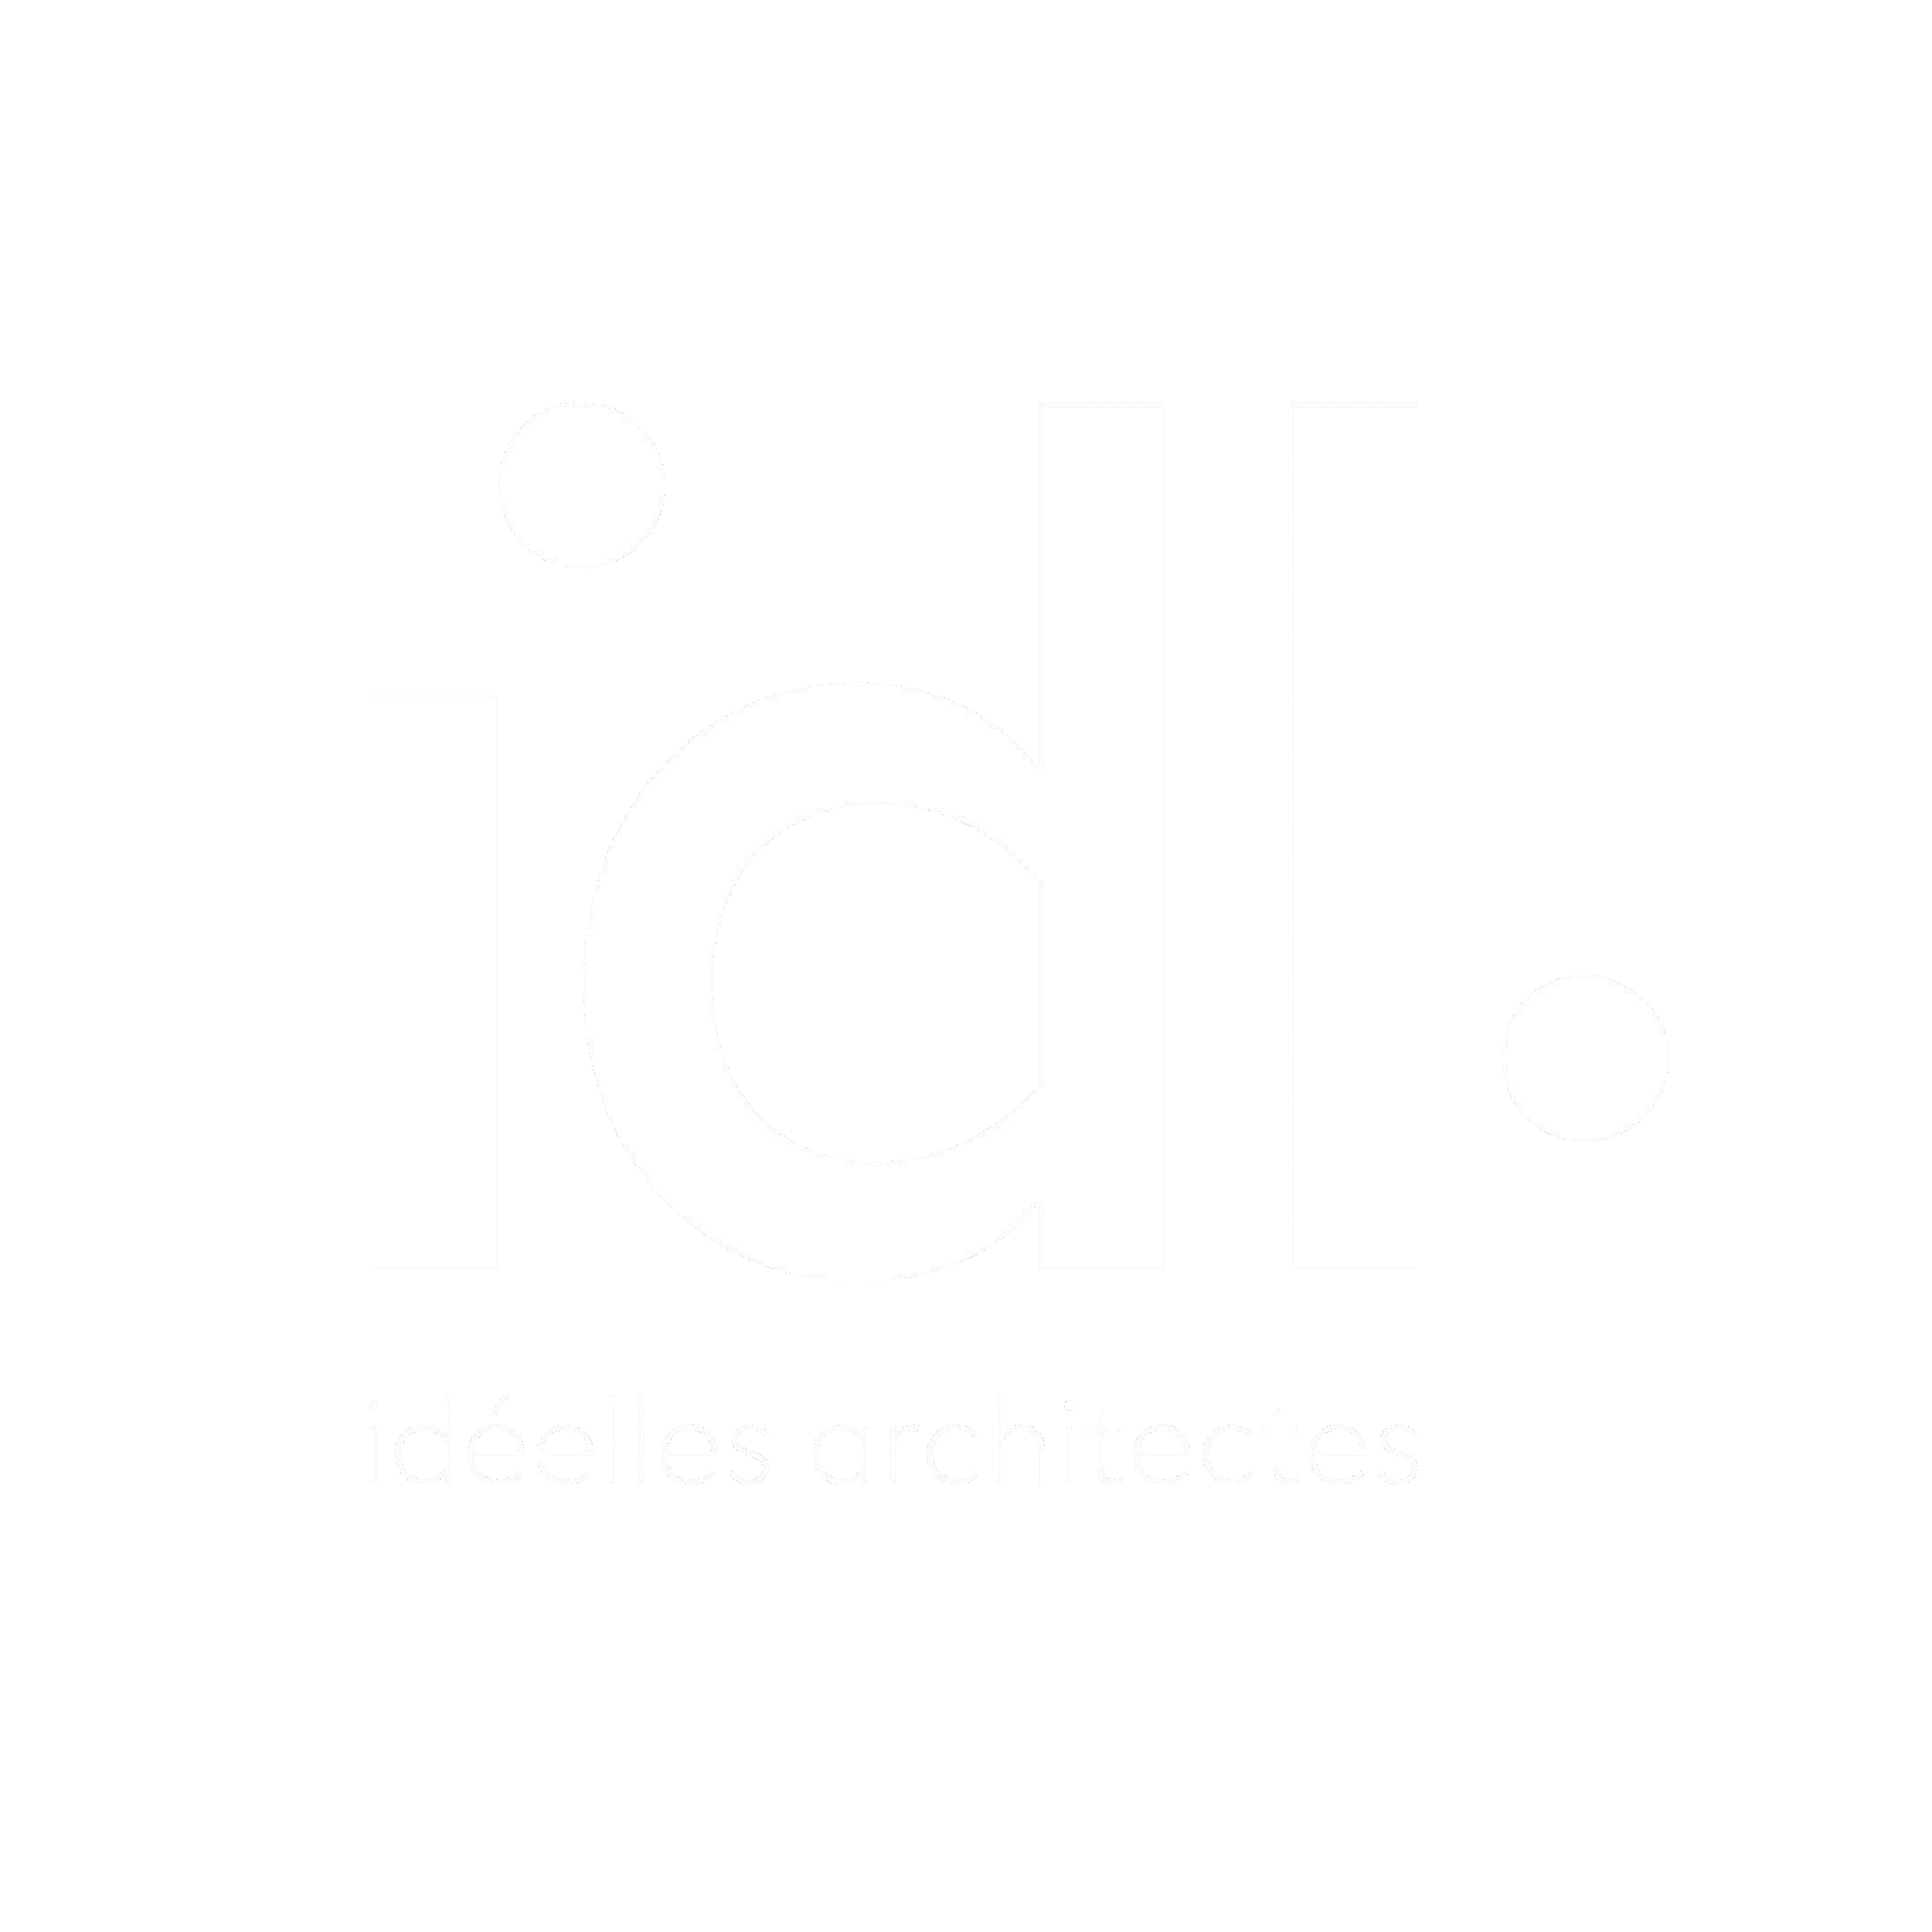 Logo of idl architectes